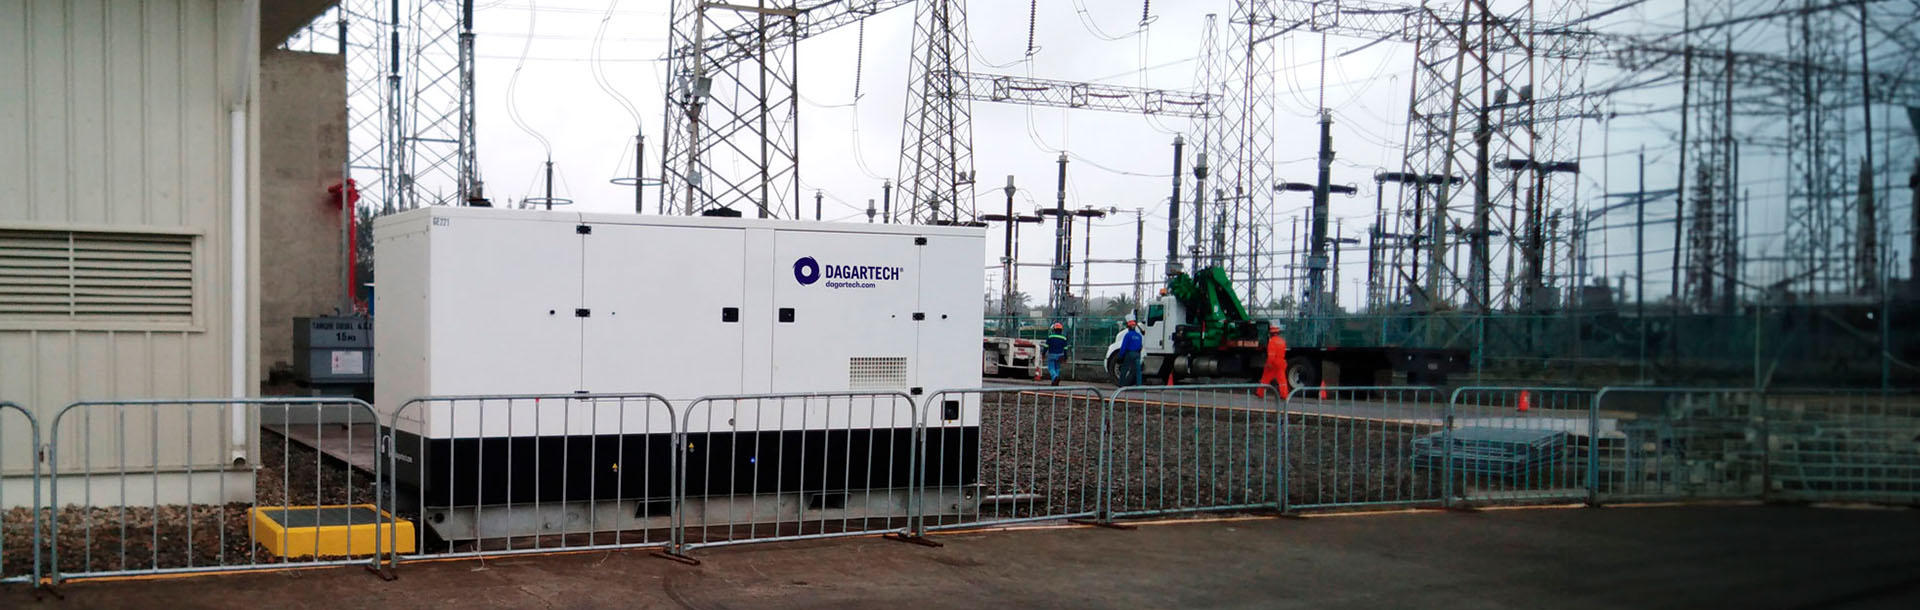 4 800 kW d’énergie Dagartech garantit les travaux de maintenance de la centrale thermoélectrique de Tuxpan, au Mexique.